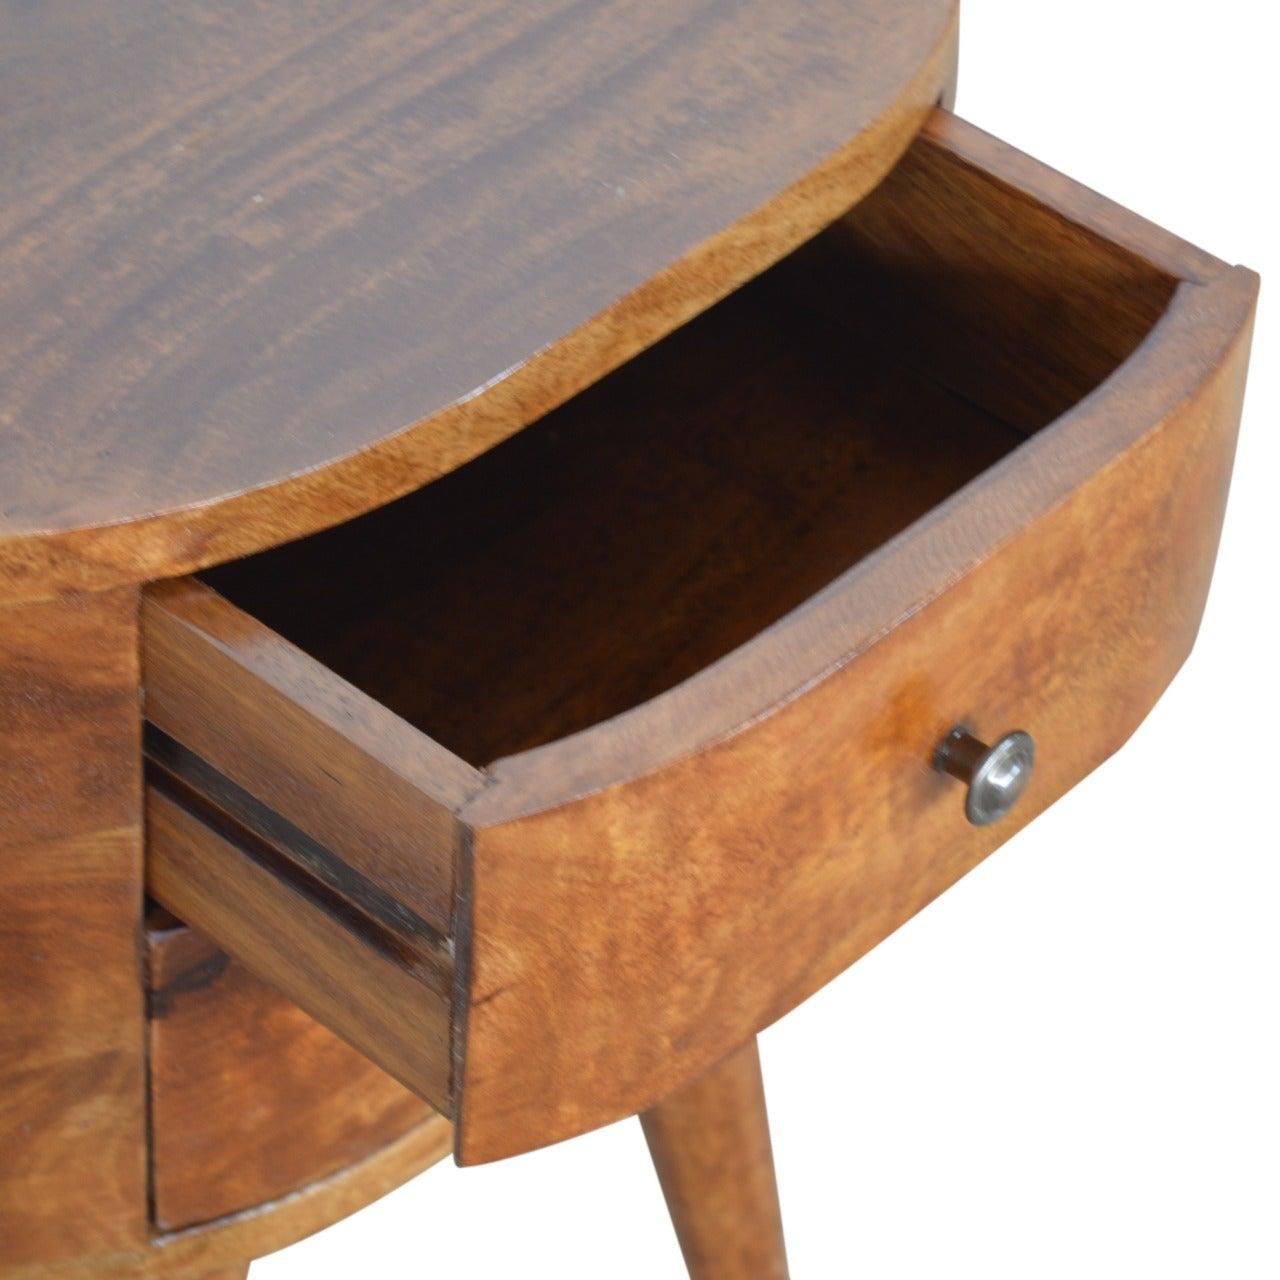 Chestnut rounded bedside table - crimblefest furniture - image 6